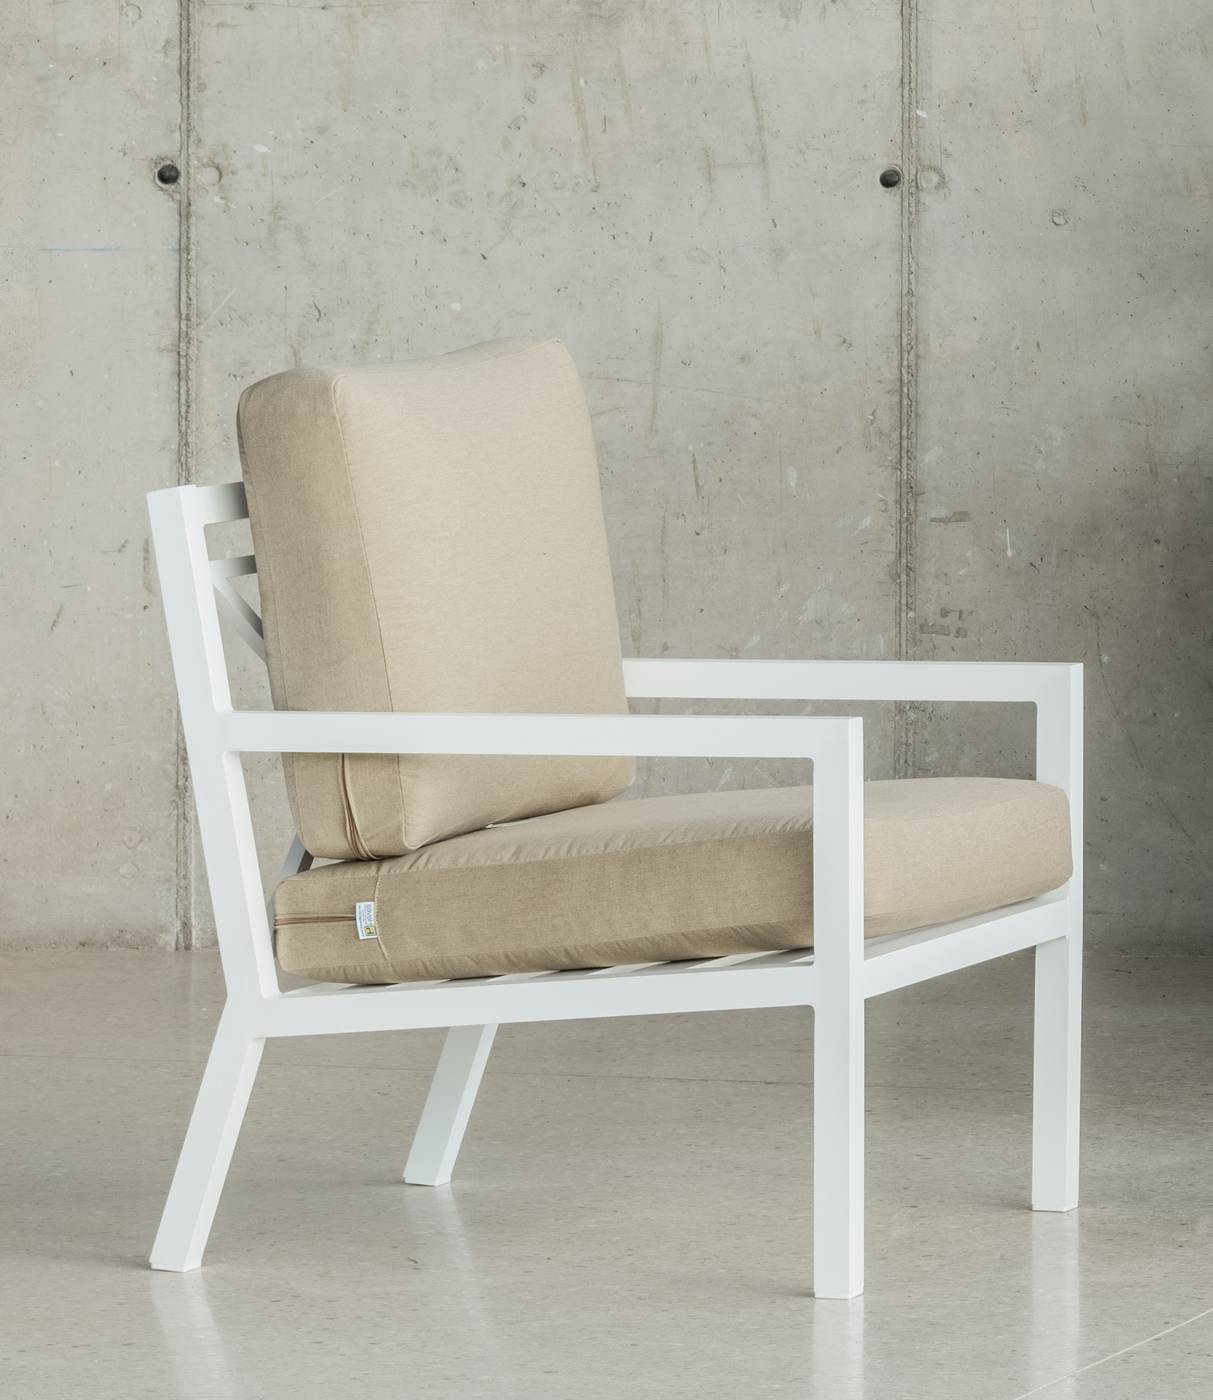 Set Aluminio Luxe Dounvil-8 - Conjunto de aluminio de lujo que incluye: un sofá tres plazas, dos sillones, una mesa de centro y cojines. Disponible en color blanco, antracita, champagne, plata o marrón